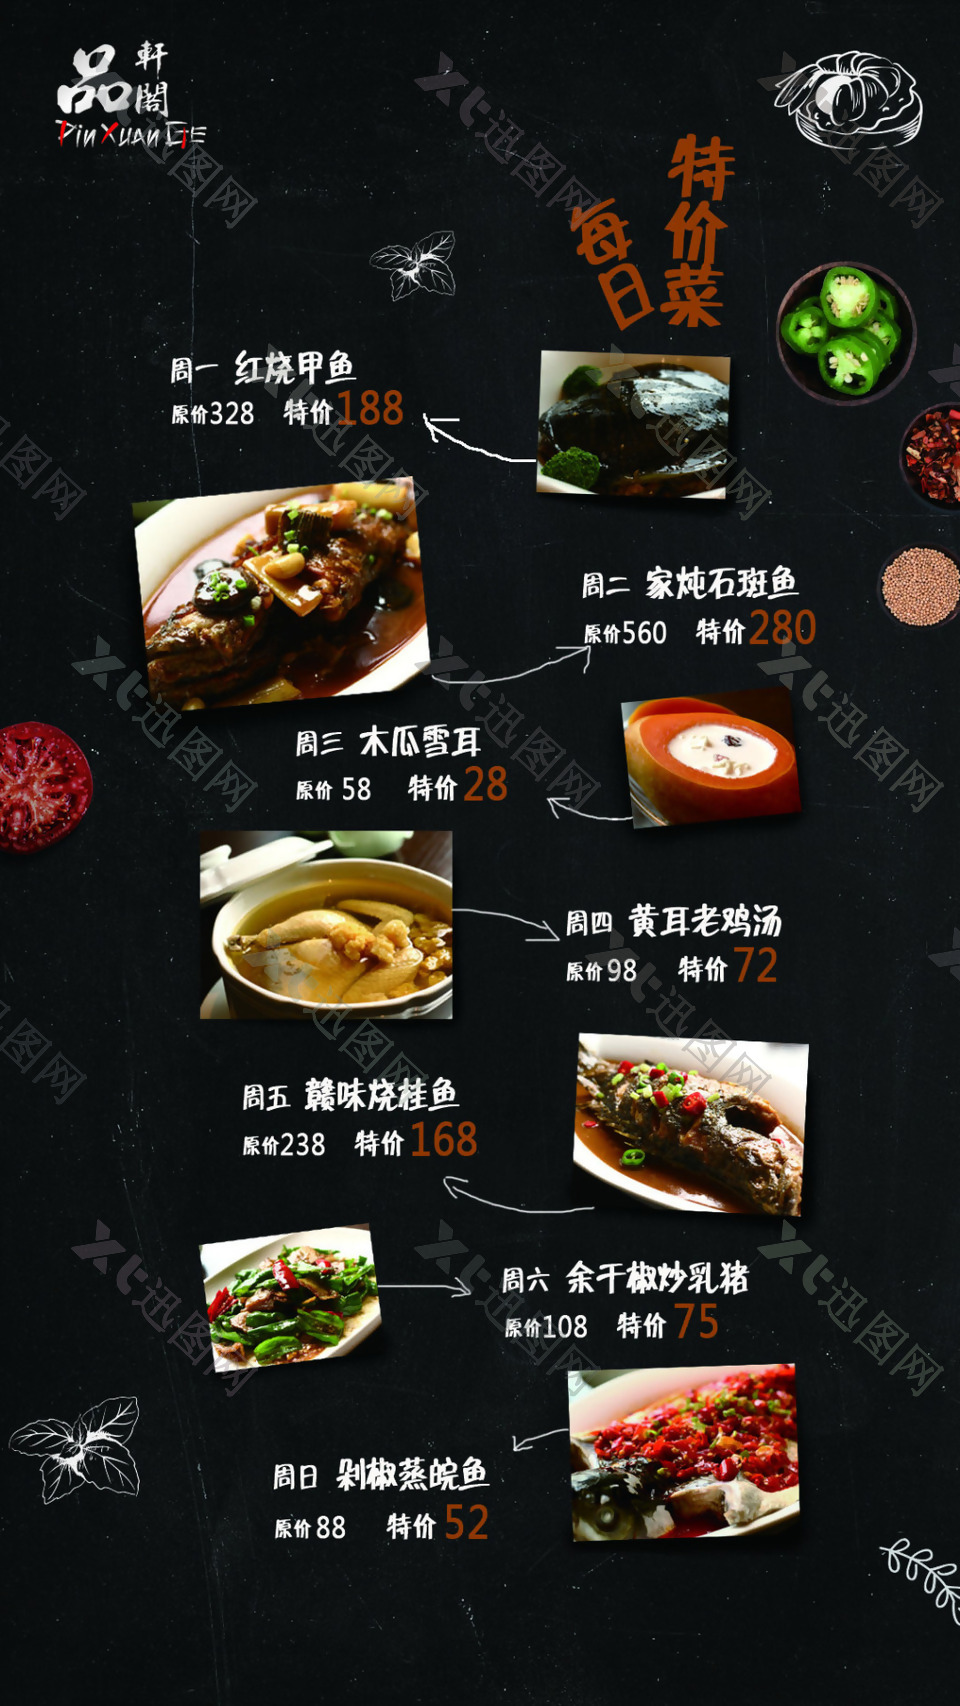 中餐厅特价菜推广海报